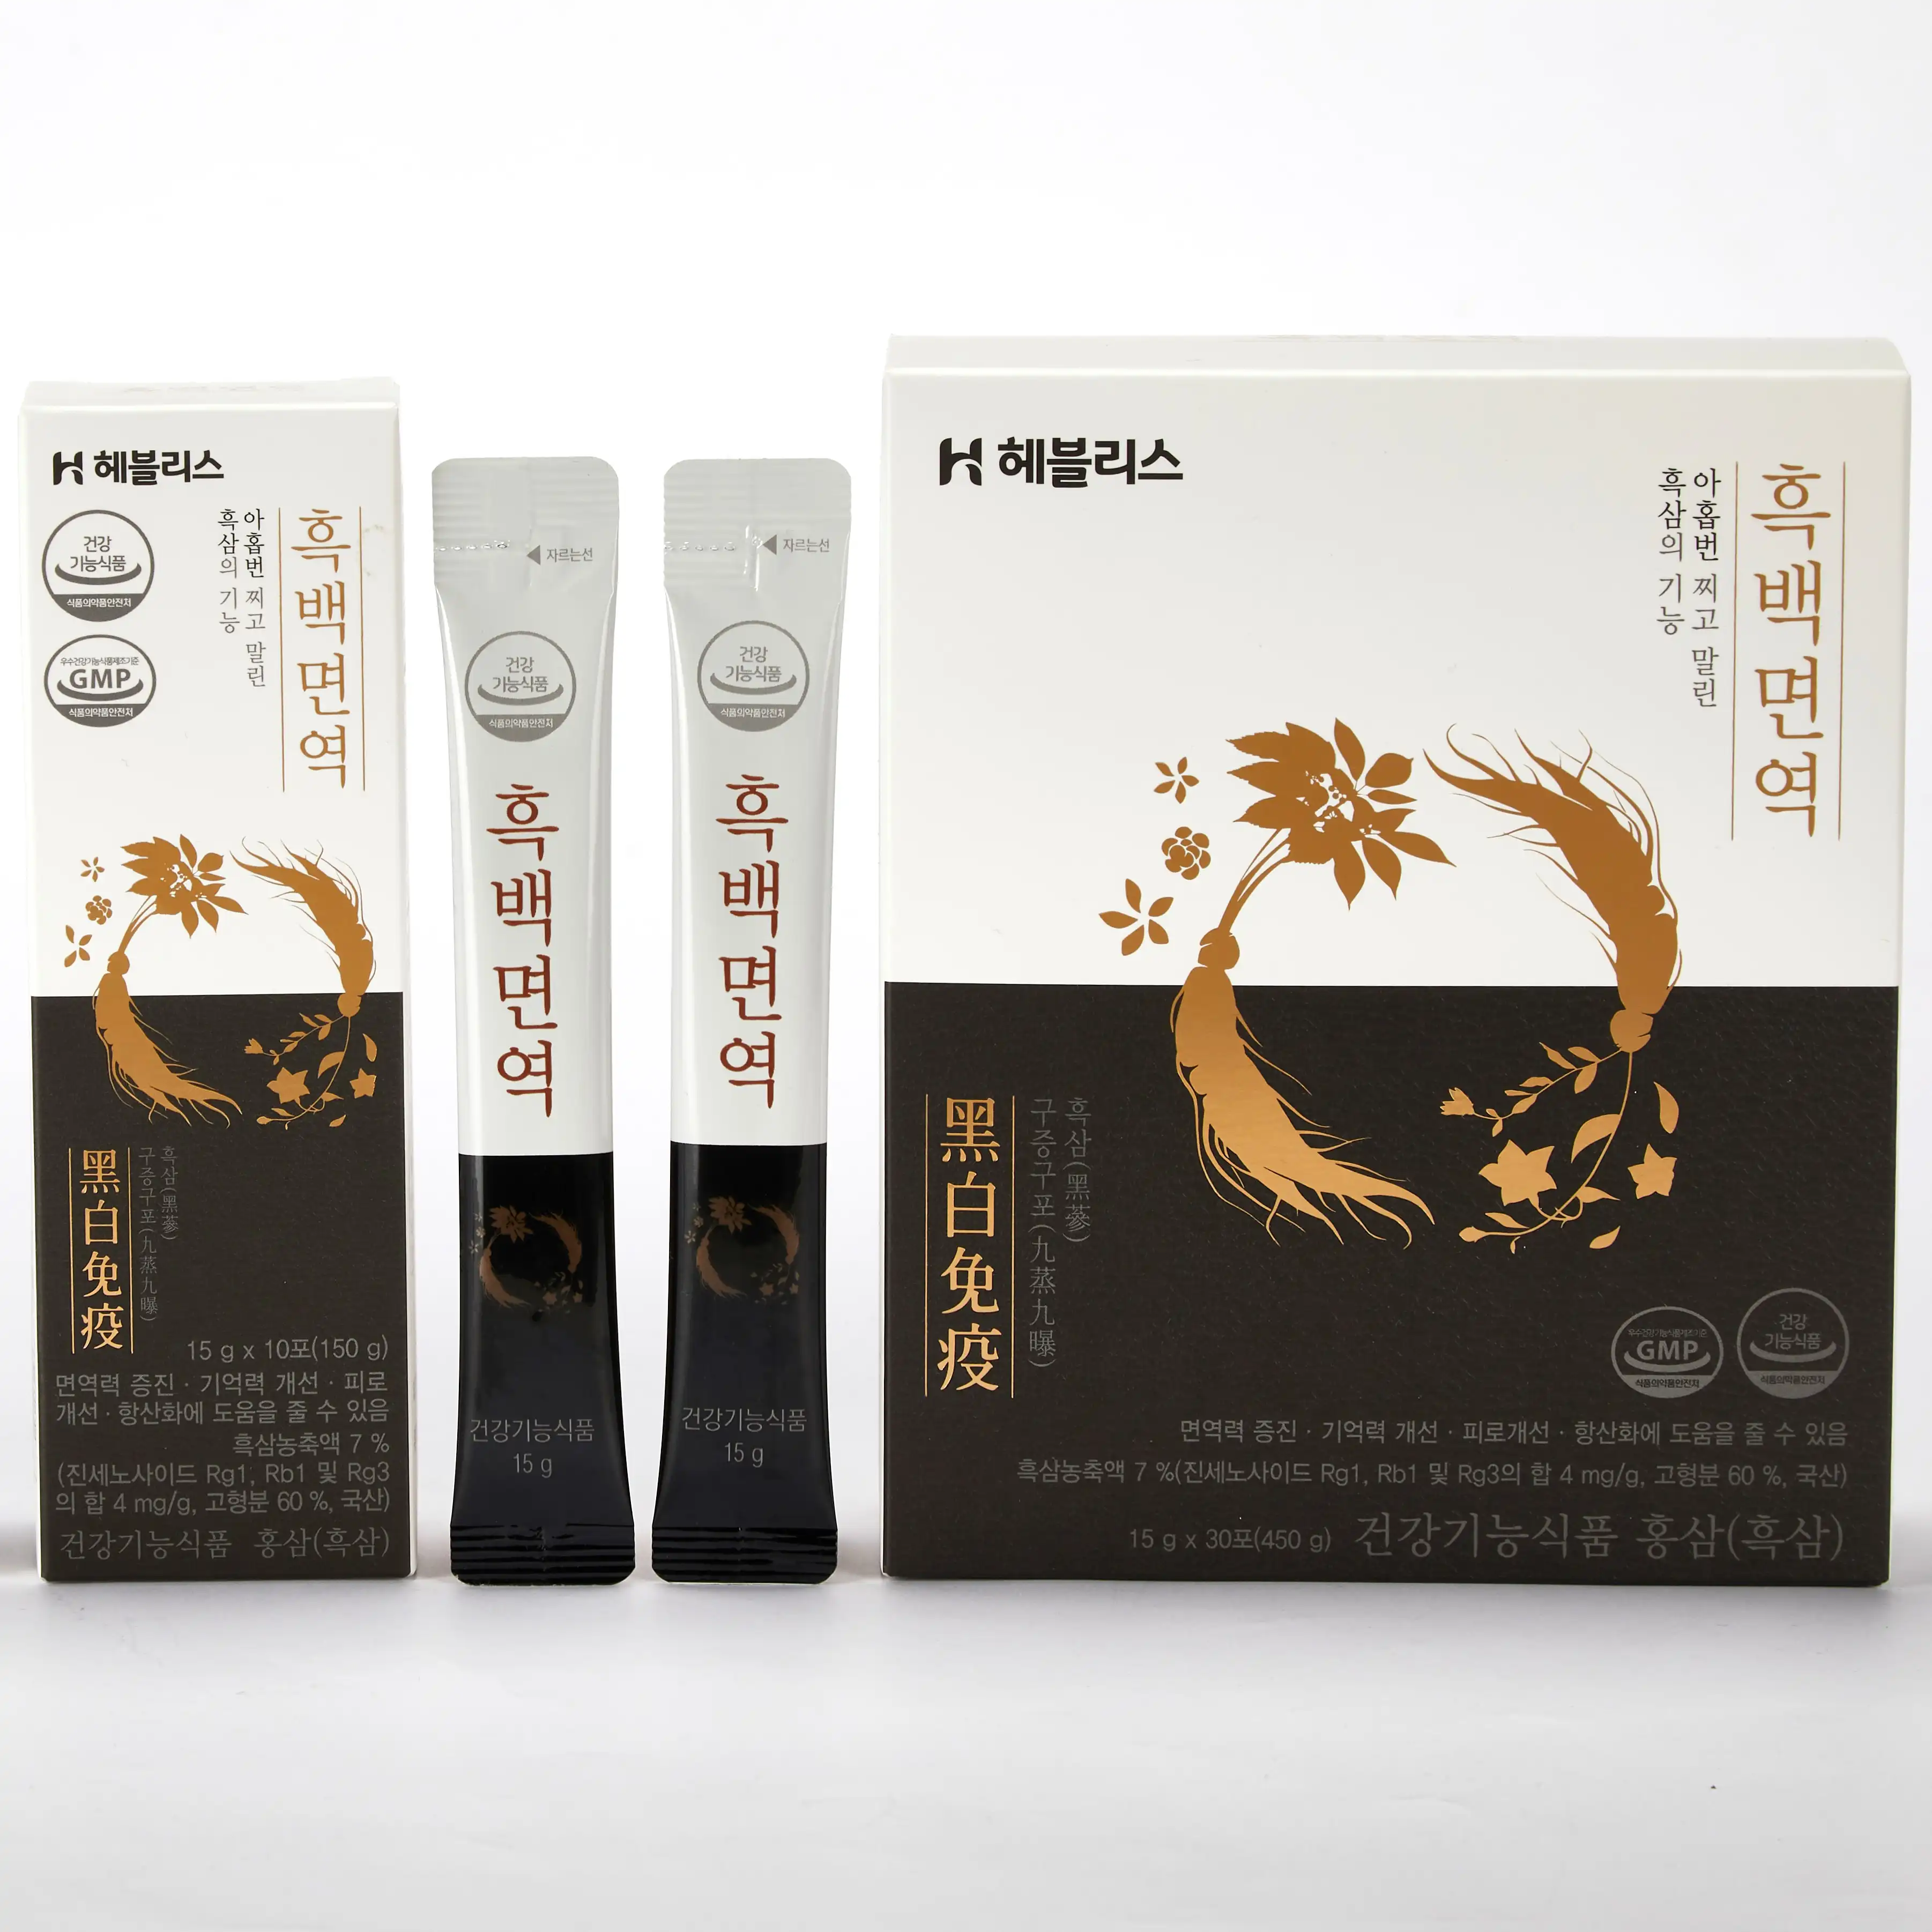 (Top) ginseng Extract Supplement Uit Korea Zwart Ginseng Gestoomd En Gedroogd Voor 9 Keer Herhaaldelijk 10 Keer Hoger Rg3 Saponine